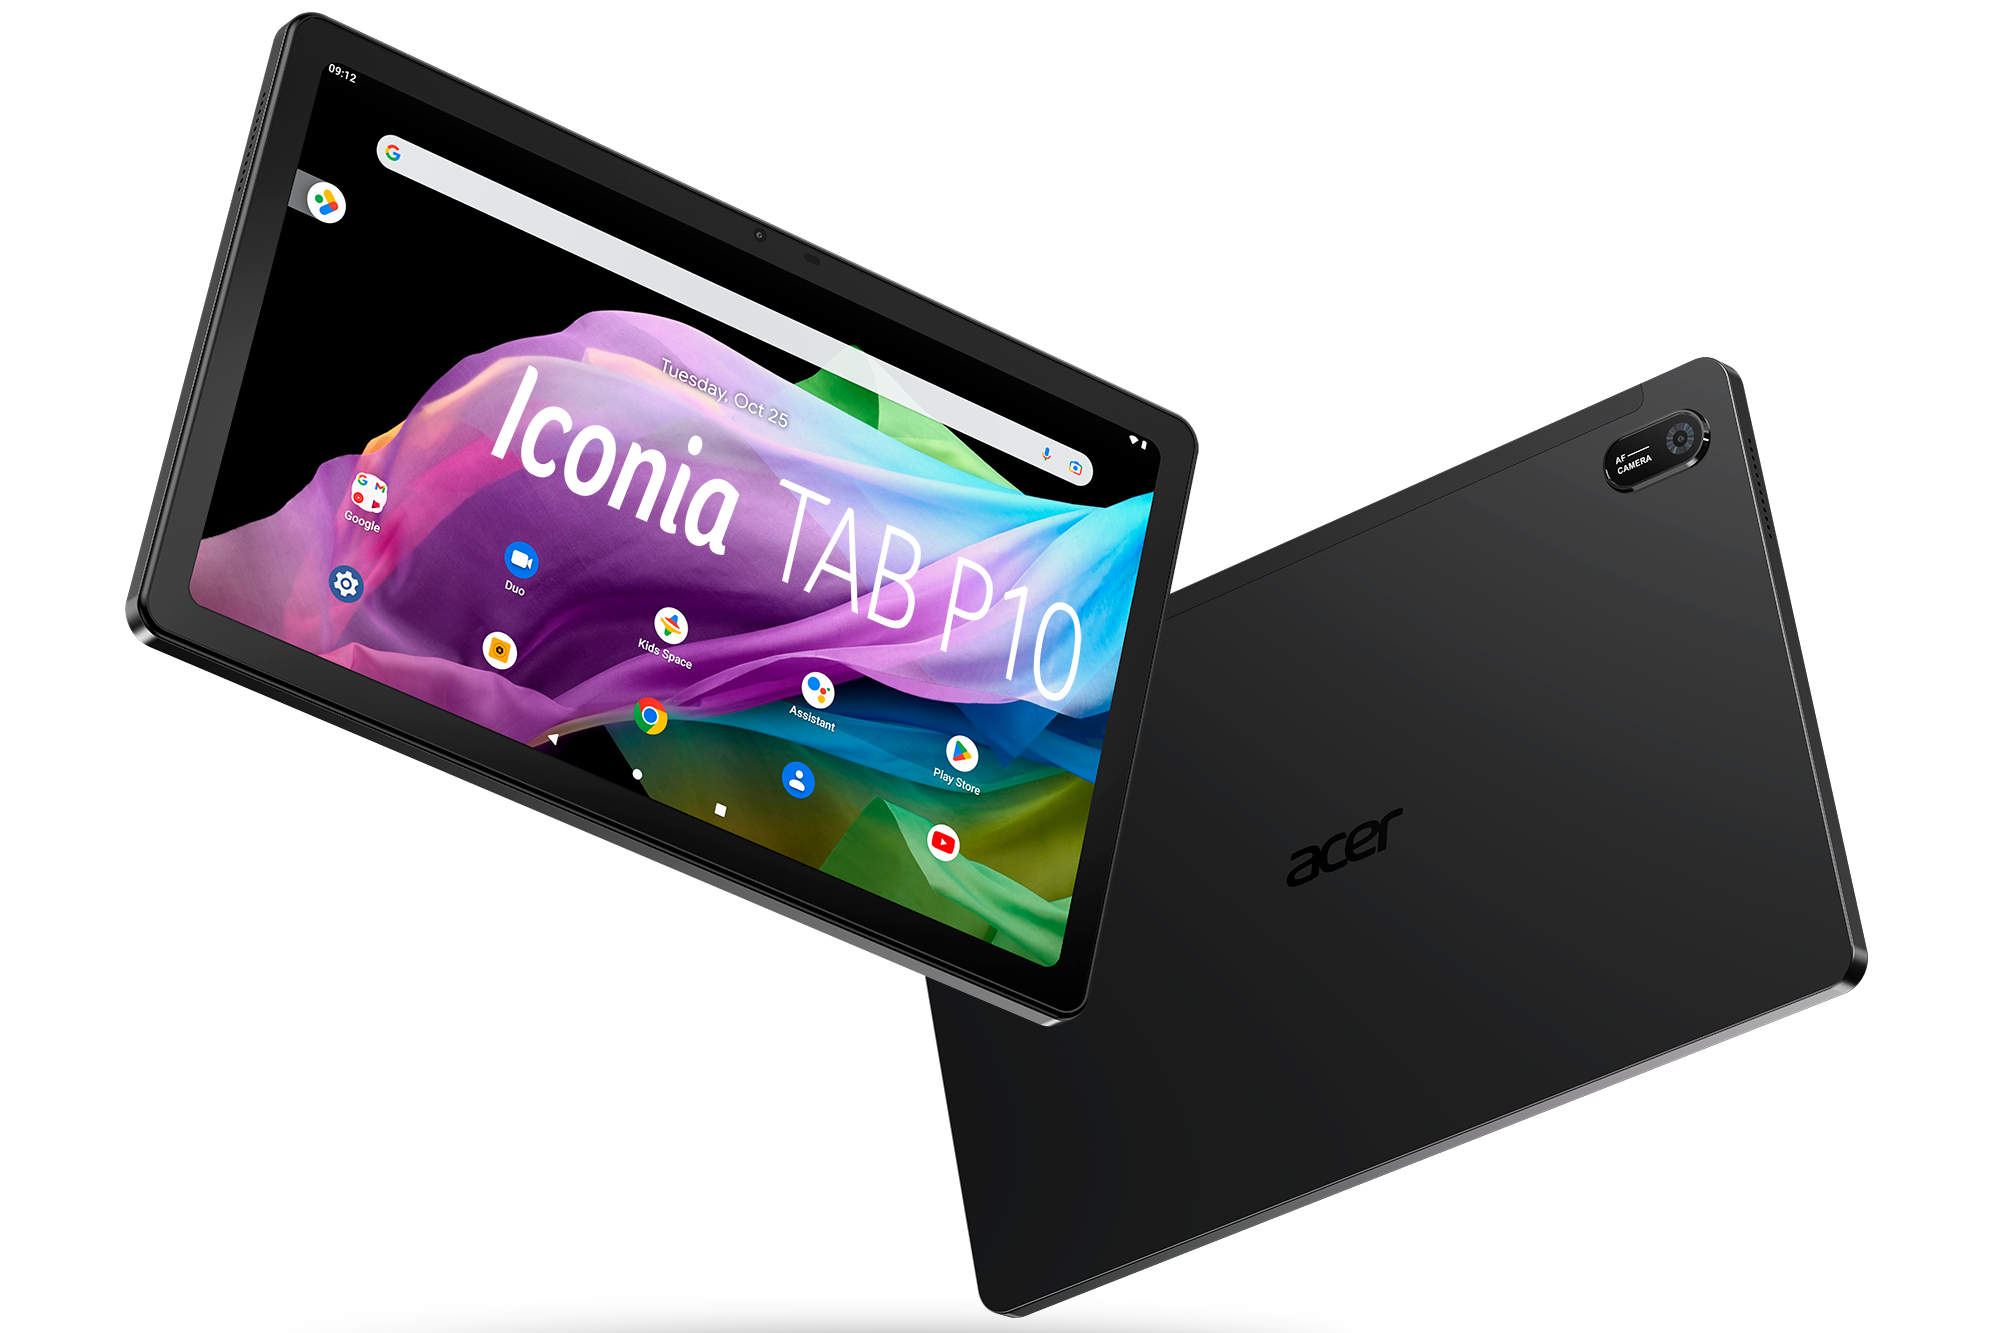 Descubre las nuevas tablets Acer Iconia TAB P10 y M10 por menos de 250€